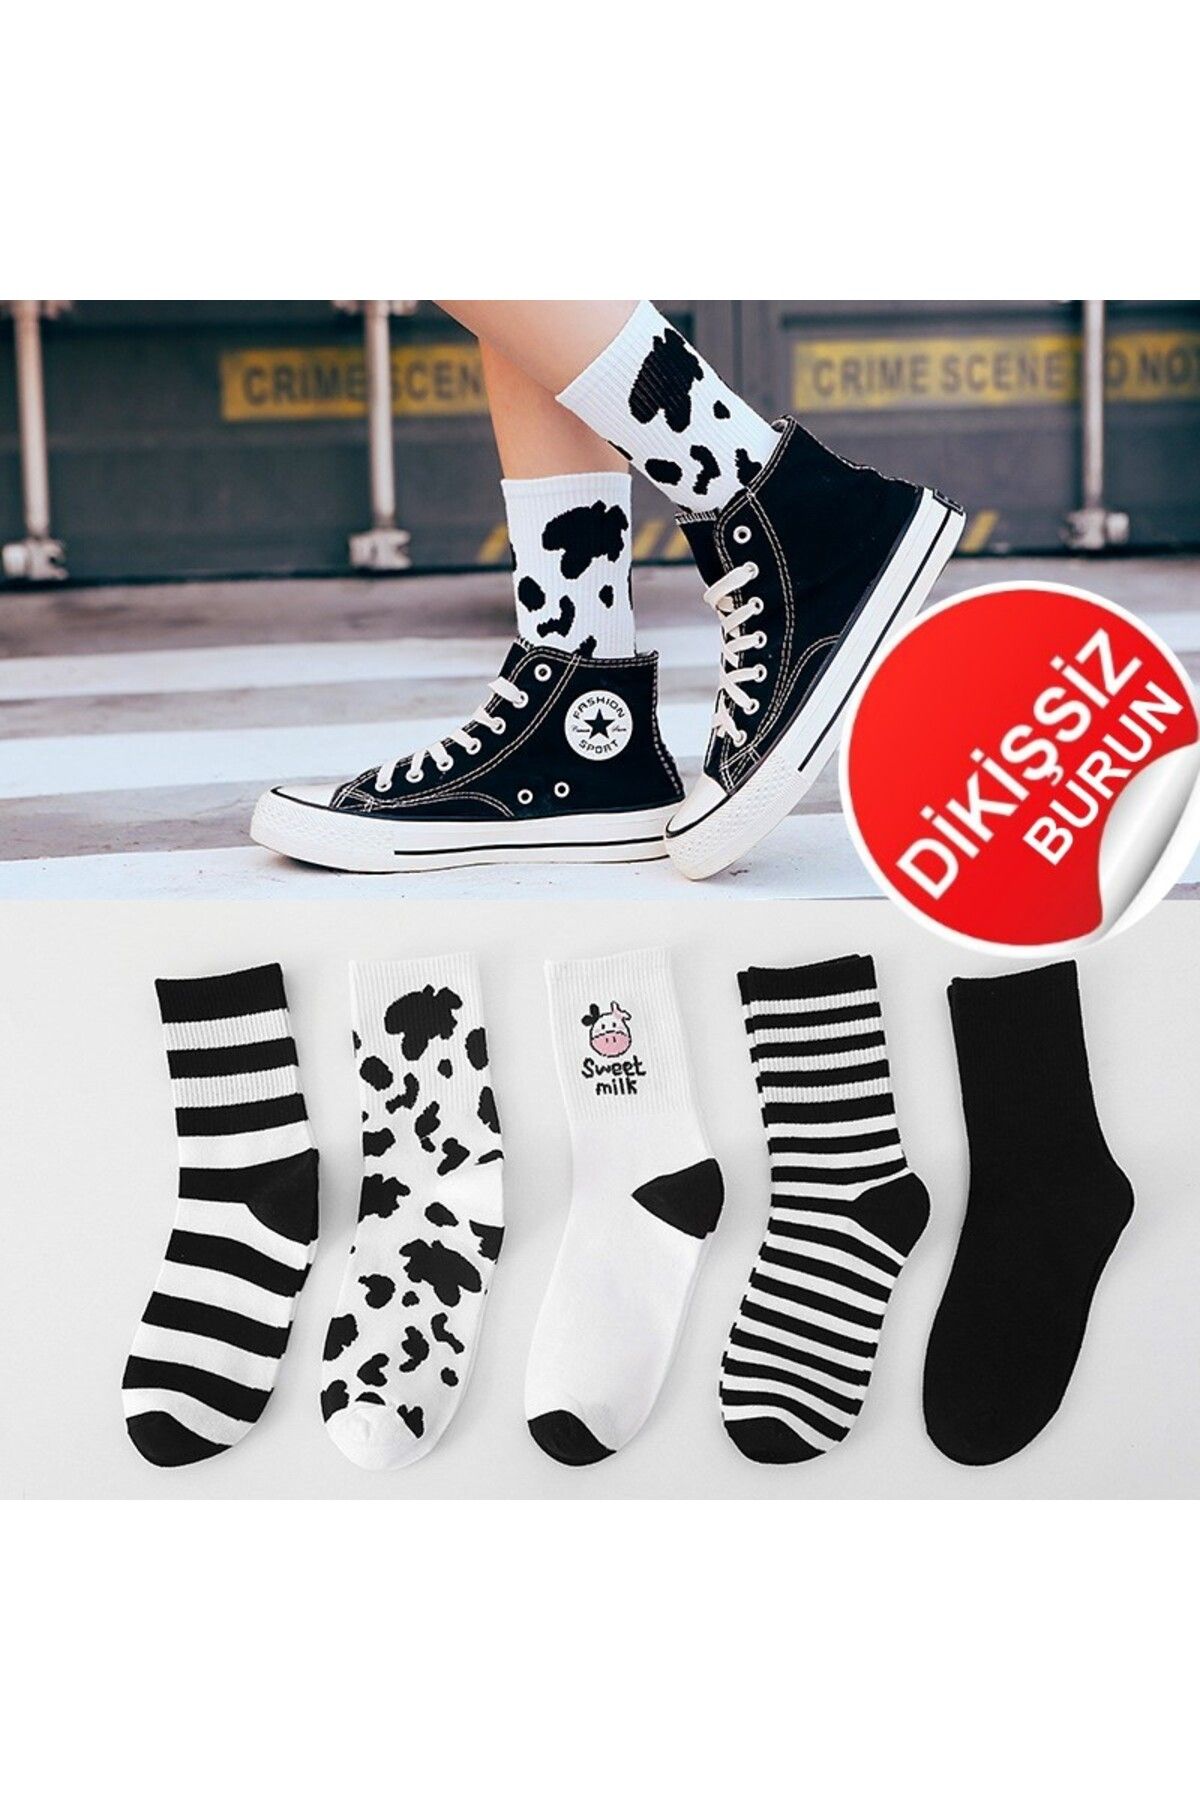 CRIMER Socks White/Black — CRIMER